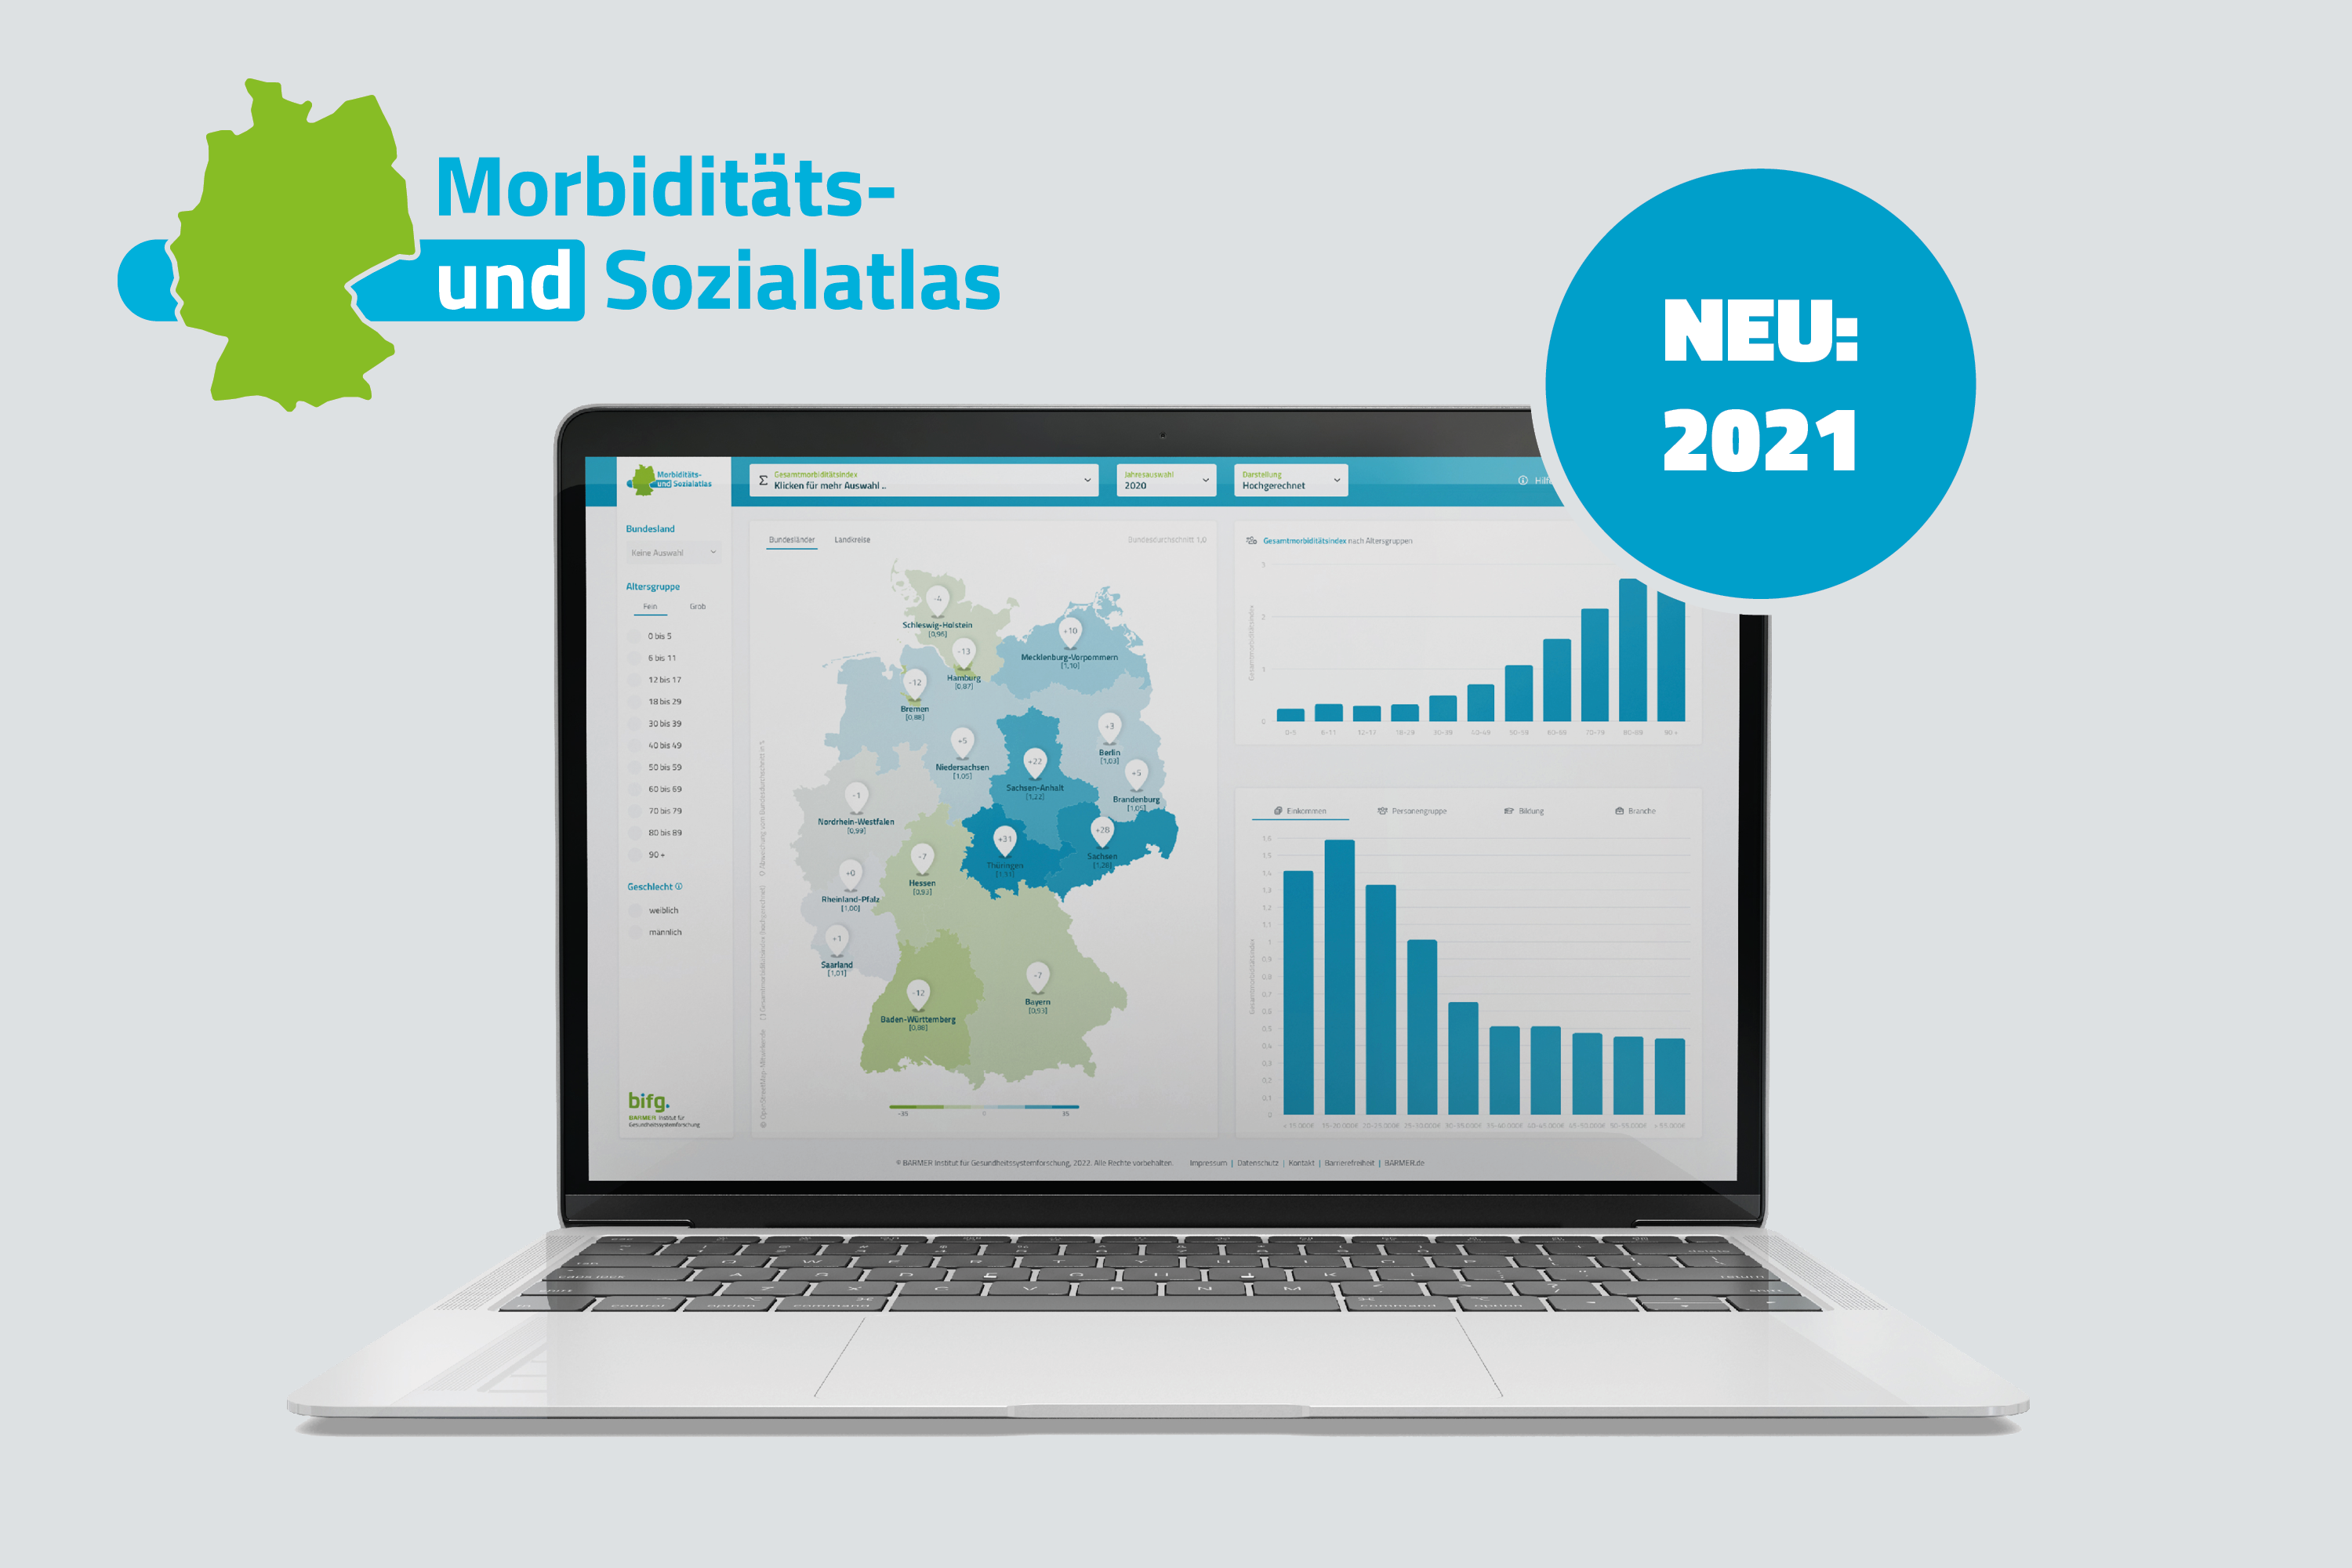 Cover Morbiditäts- und Sozialatlas:
Erweiterung um das Datenjahr 2021